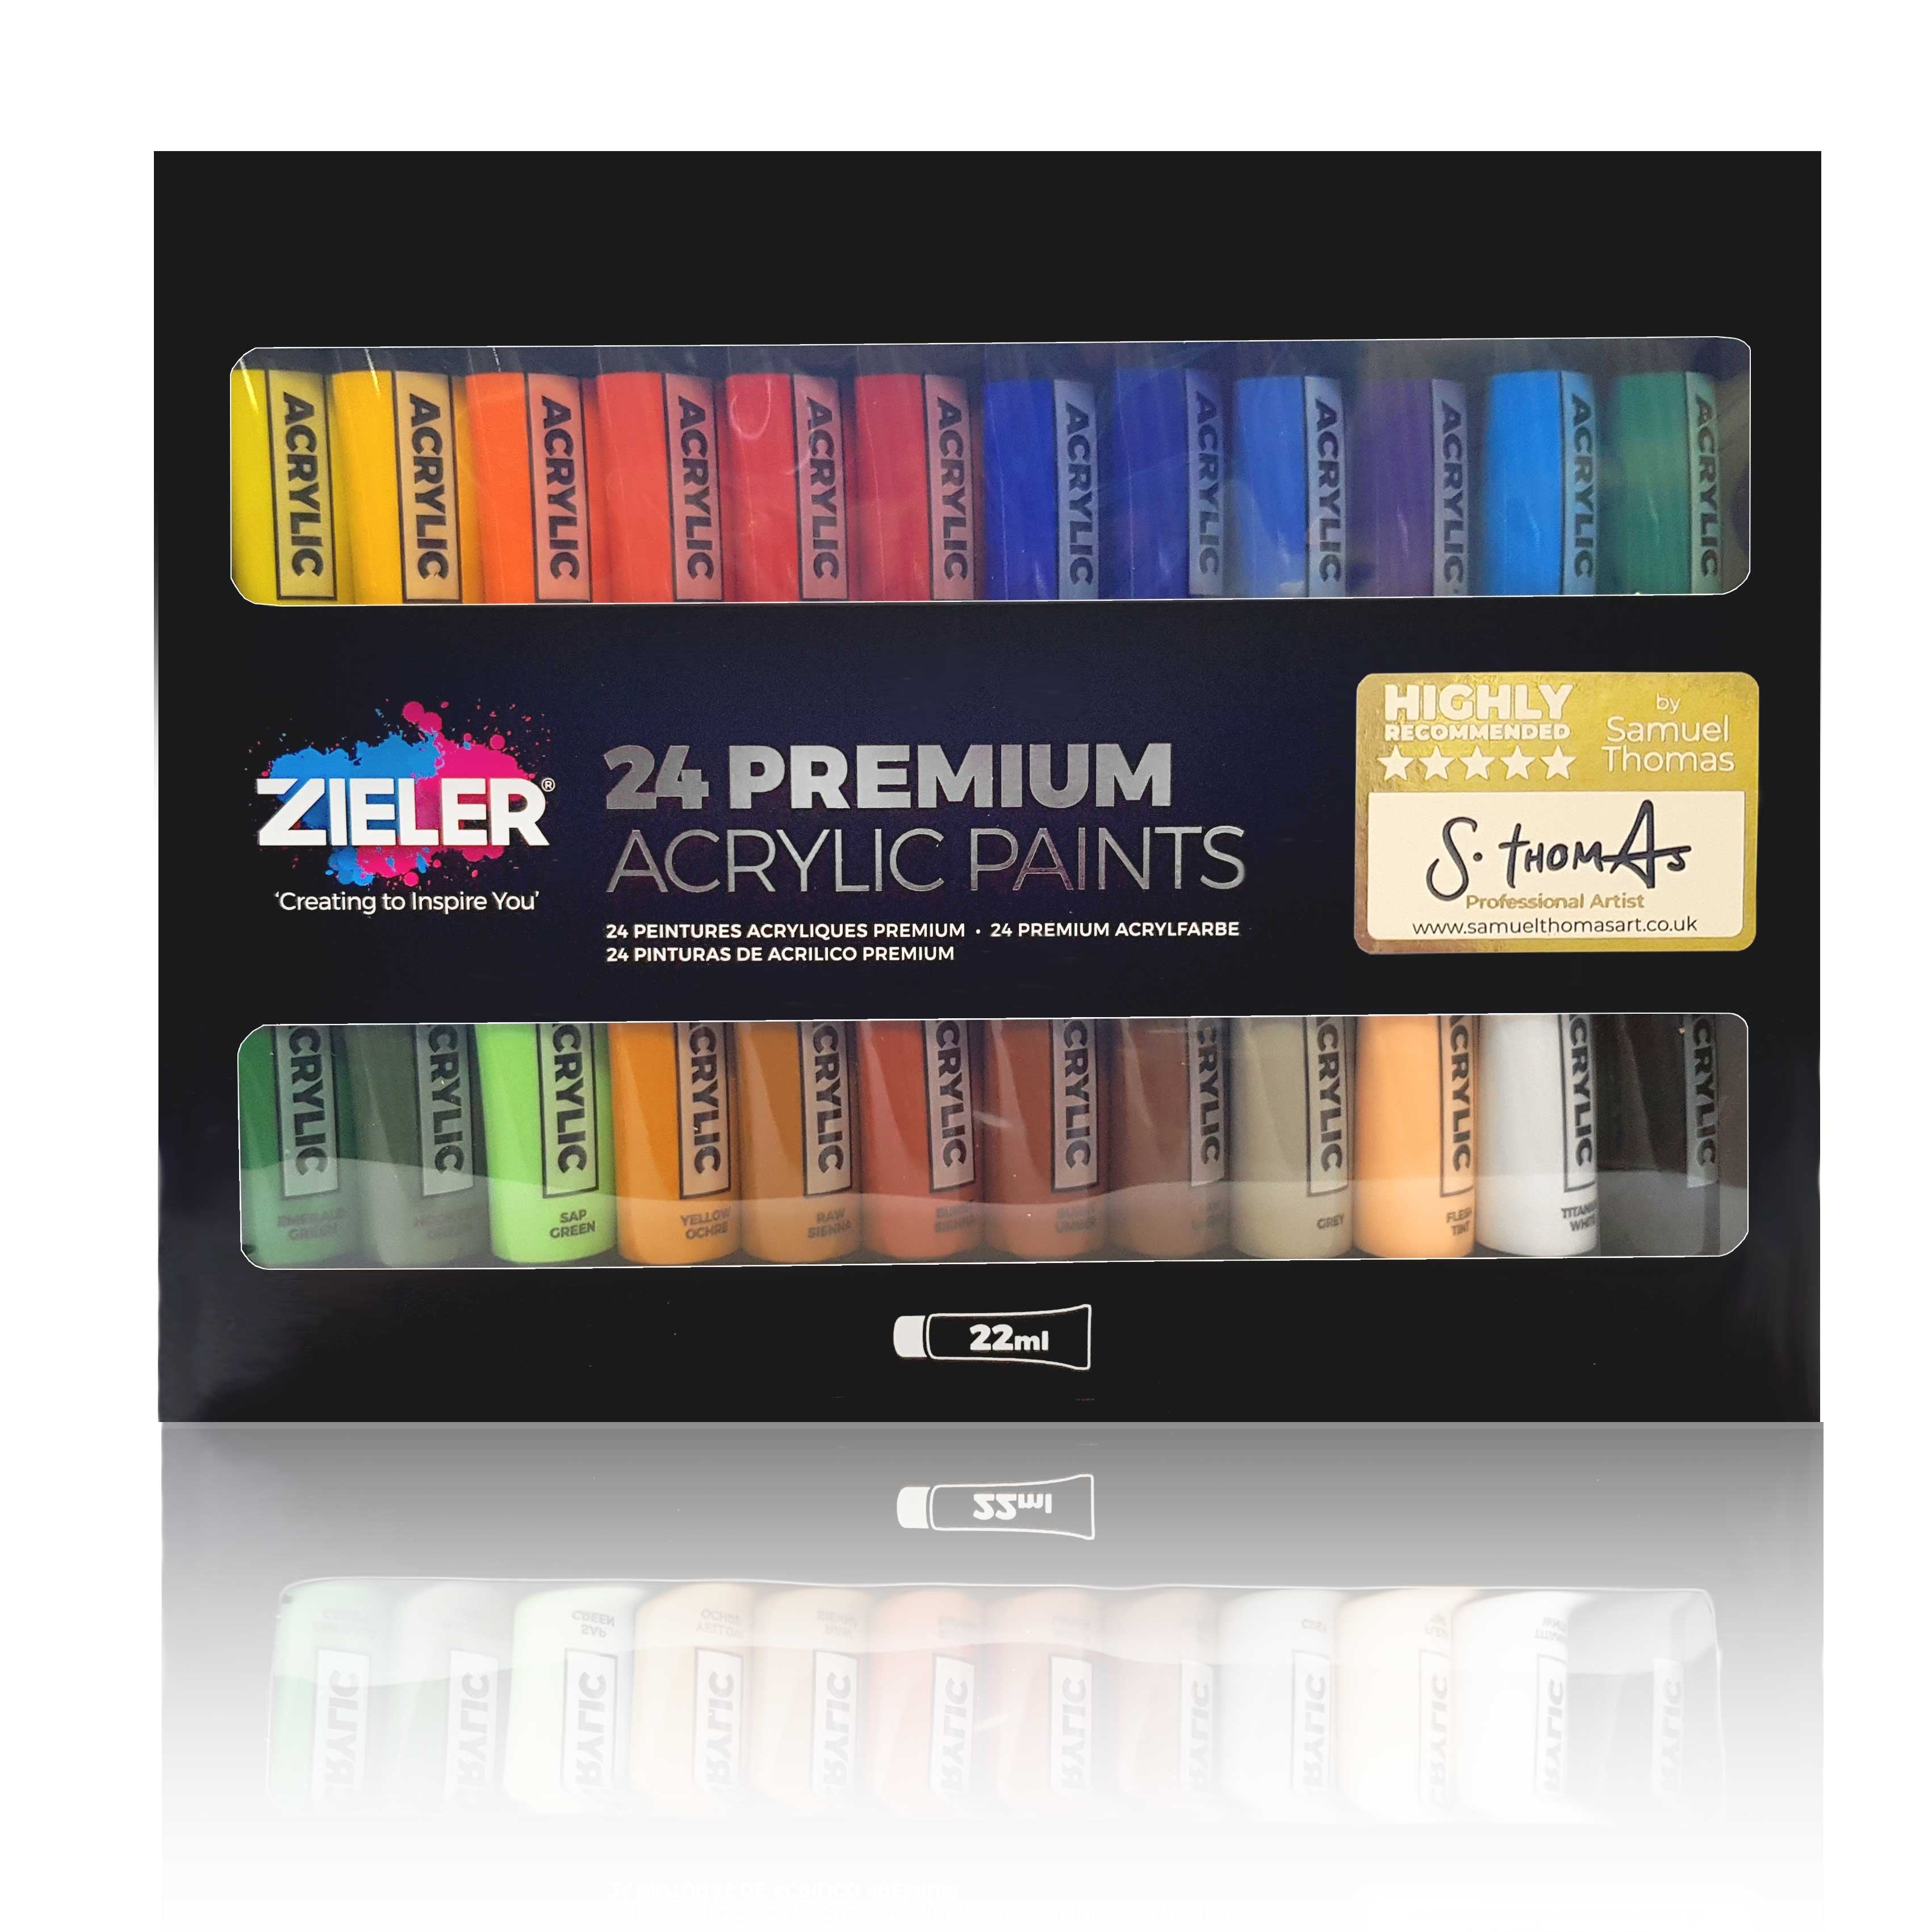 Gen Craft Premium Gouache Paint Set with 50 Paint Tubes